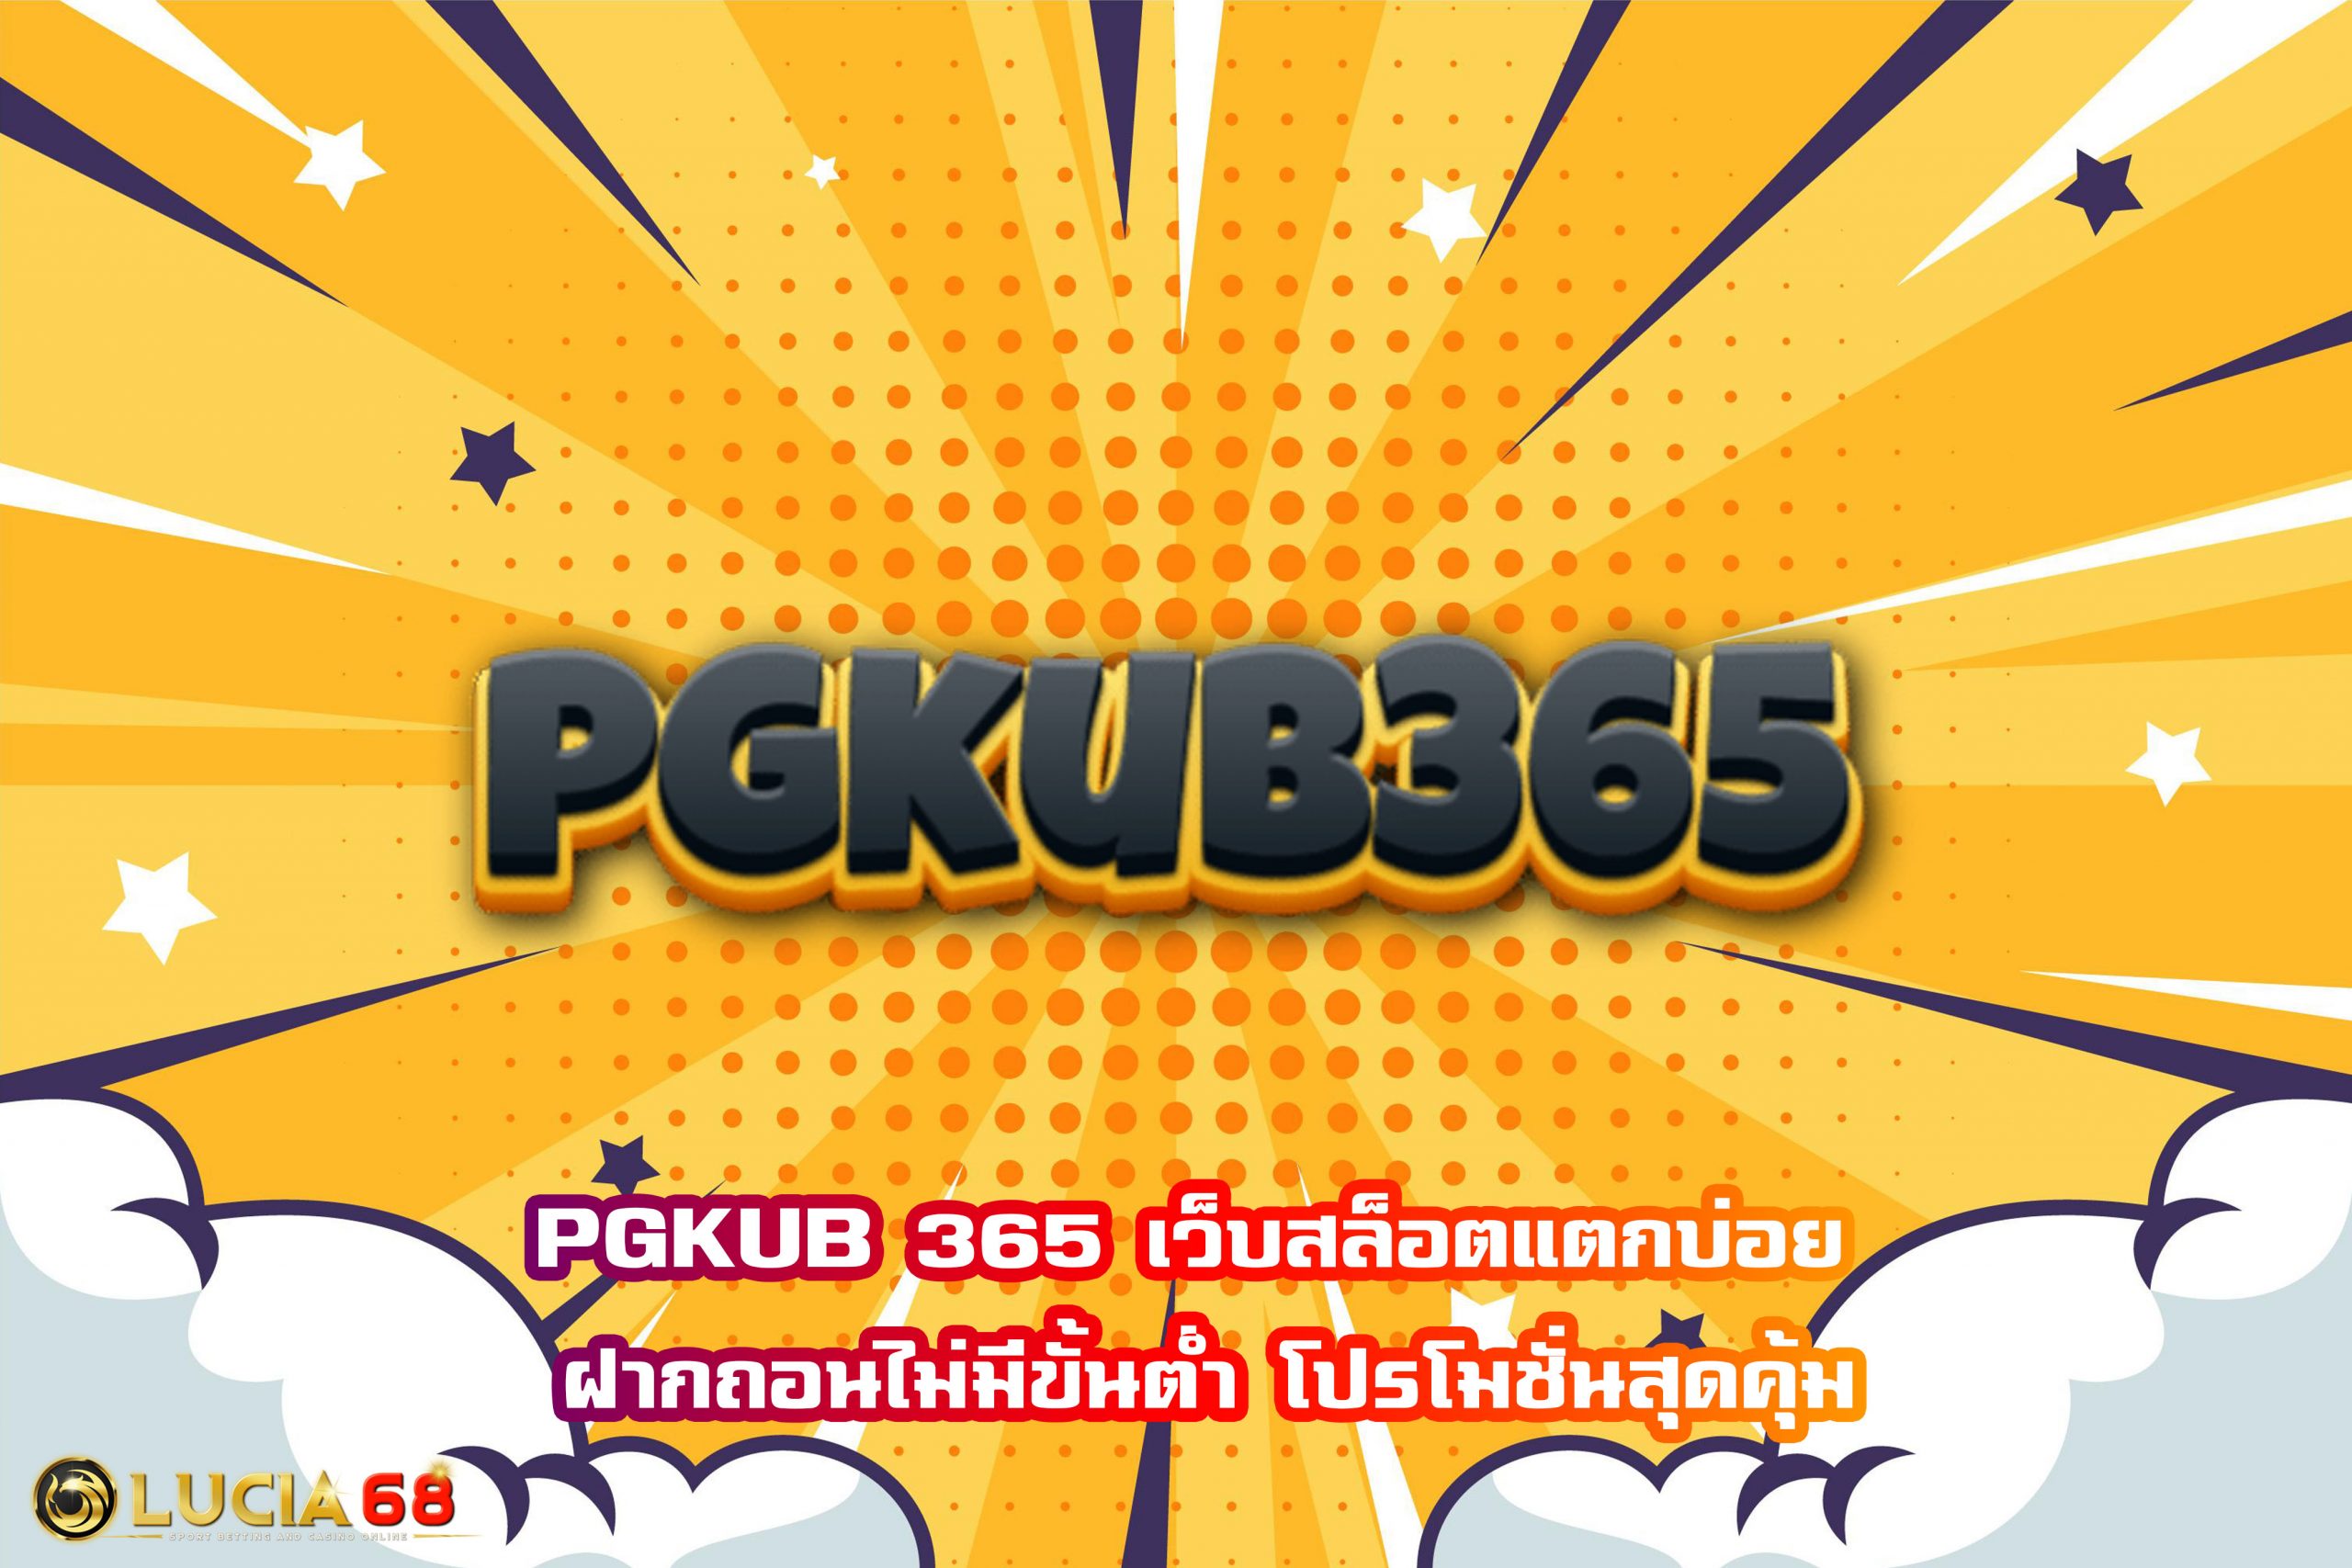 PGKUB 365 เว็บสล็อตแตกบ่อย ฝากถอนไม่มีขั้นต่ำ โปรโมชั่นสุดคุ้ม